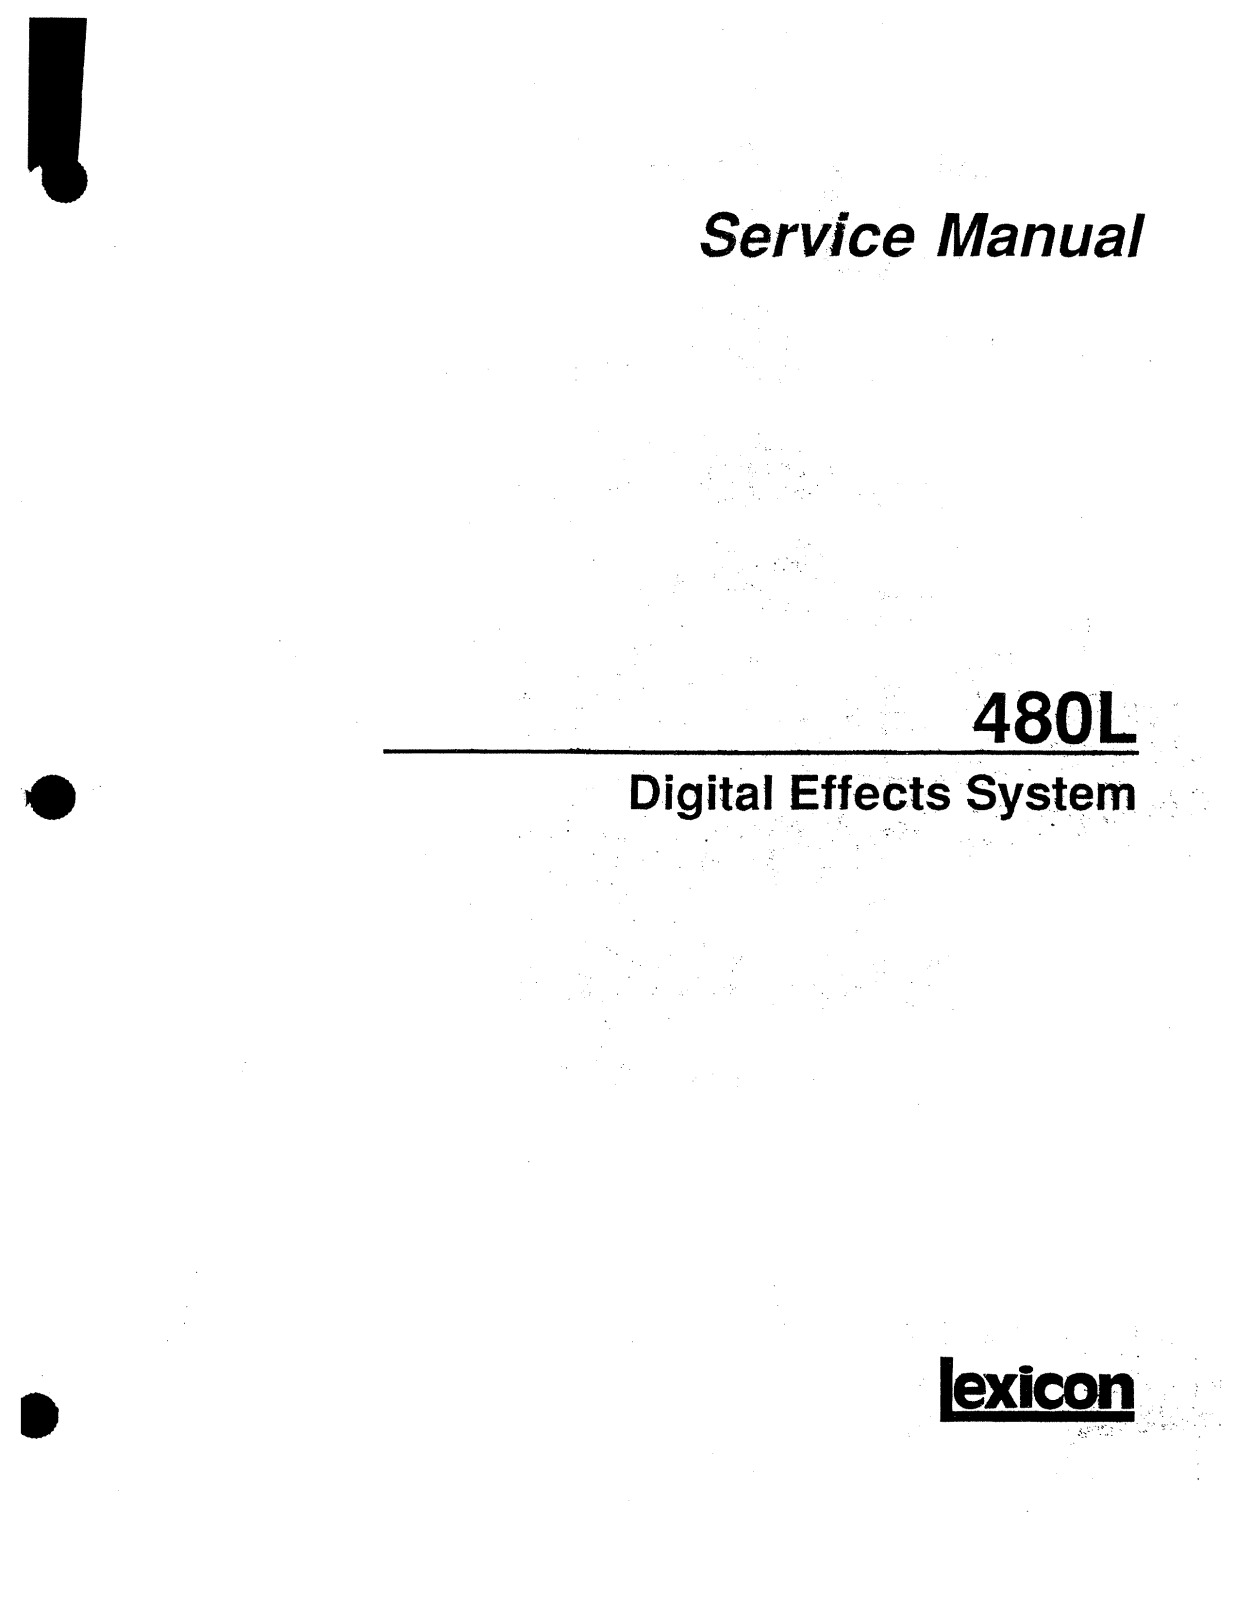 Lexicon 480L Service Manual